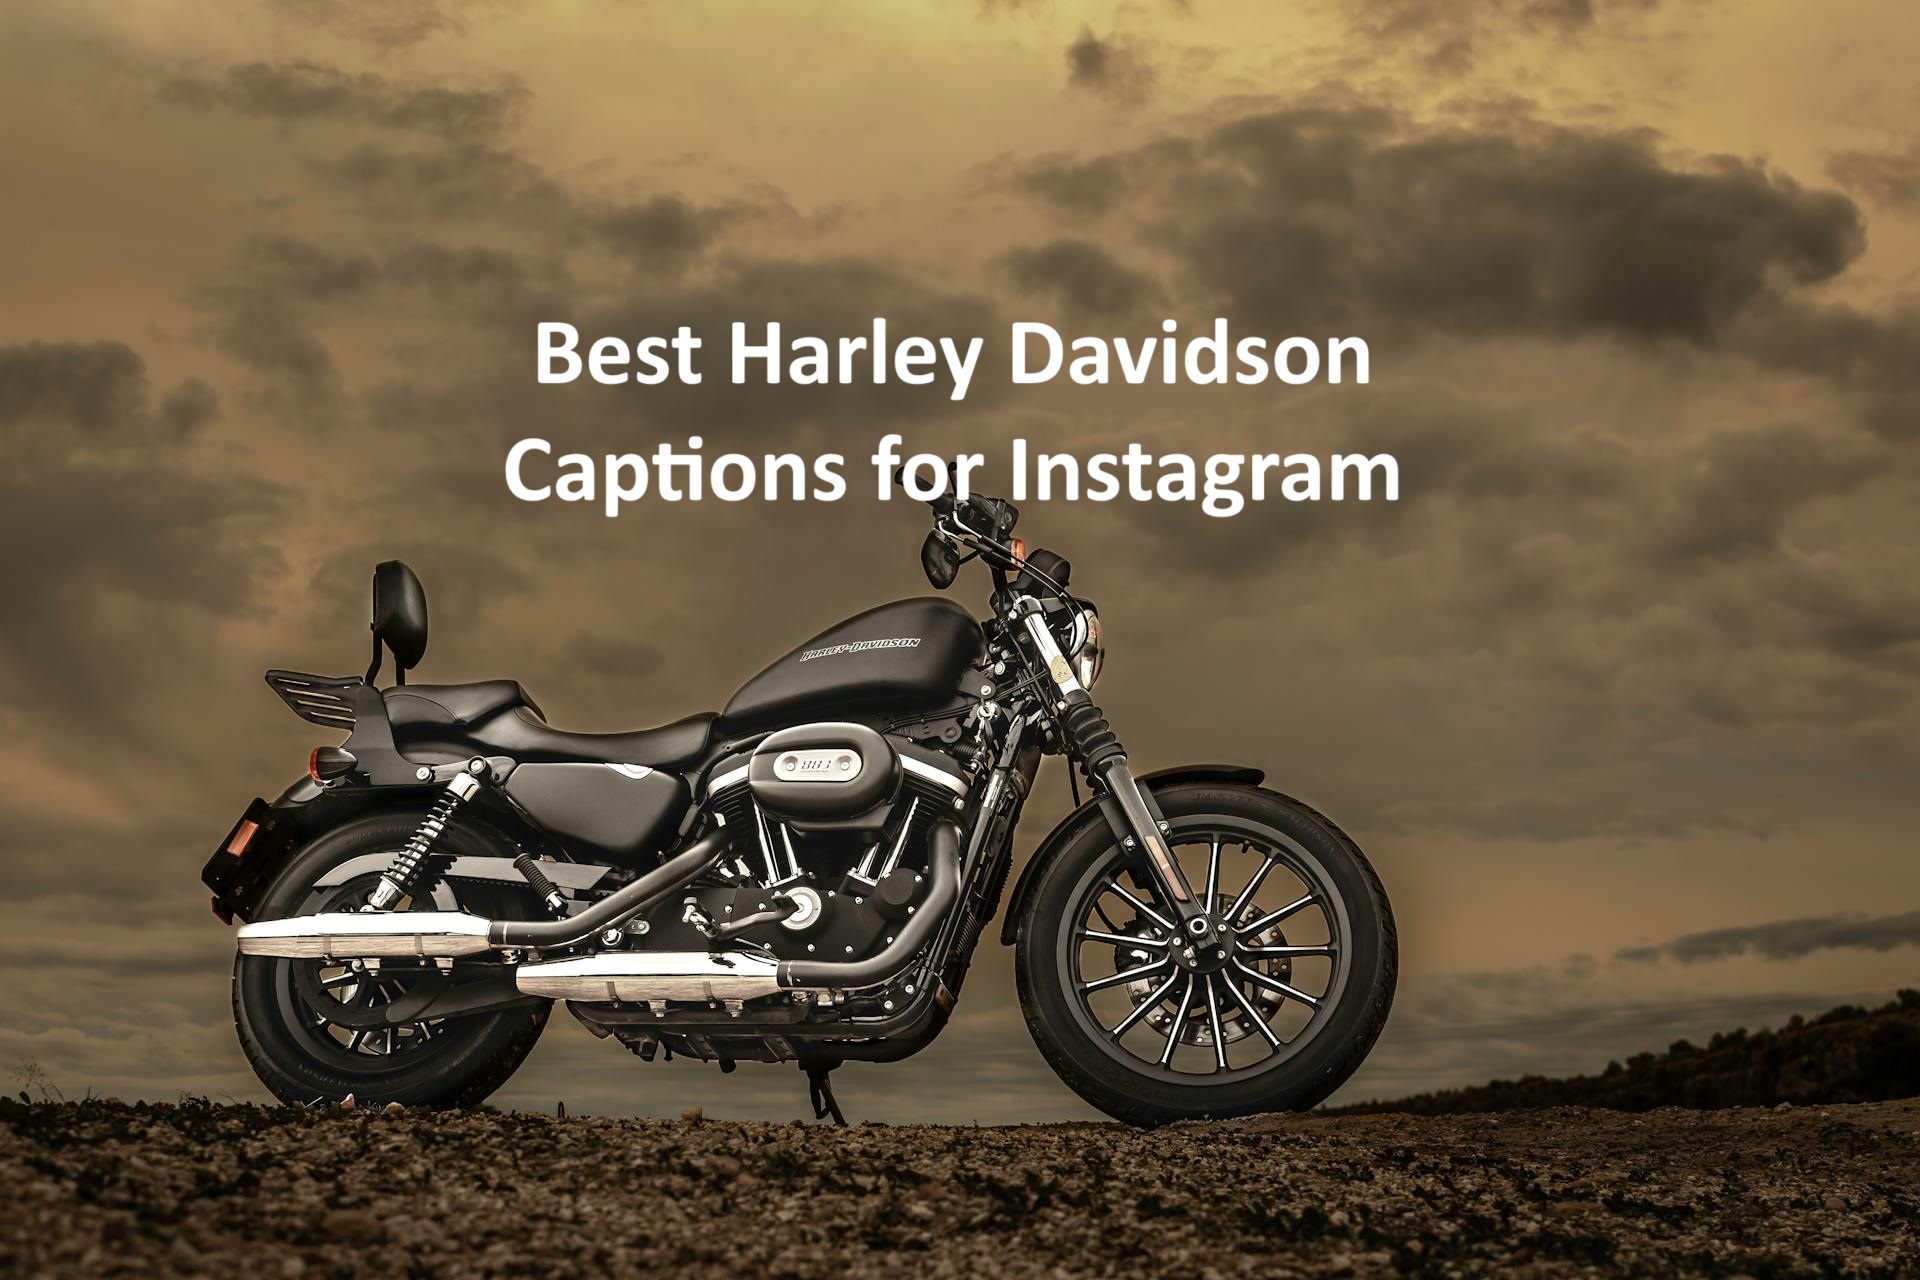 Harley Davidson Captions for Instagram